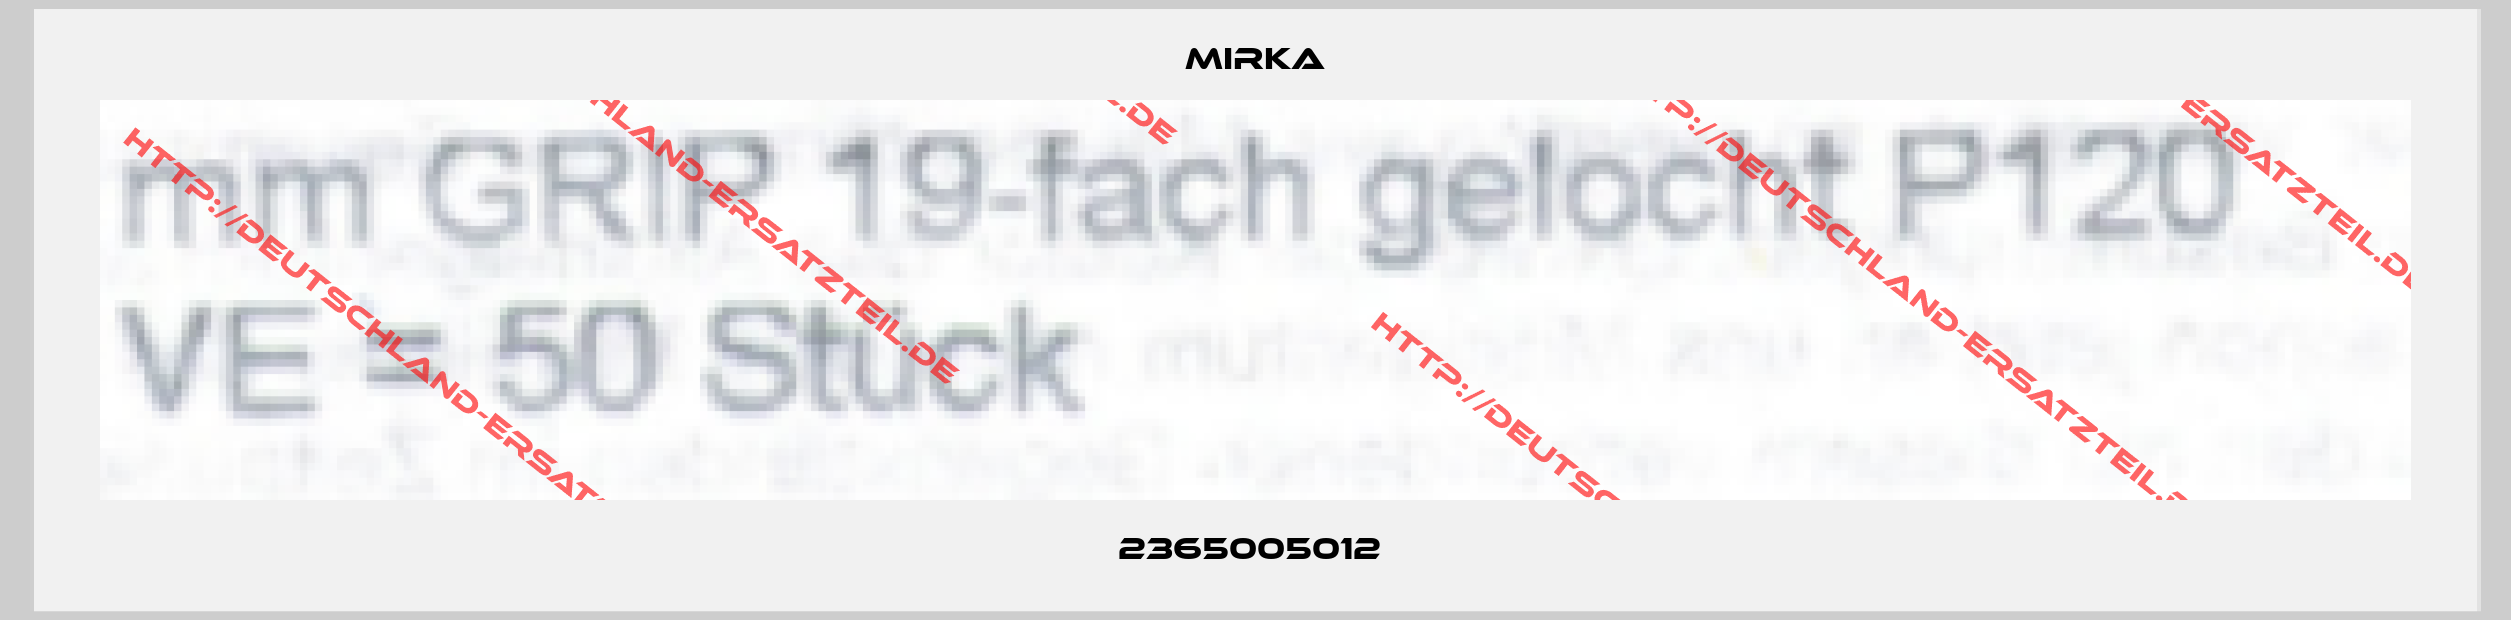 Mirka-2365005012 